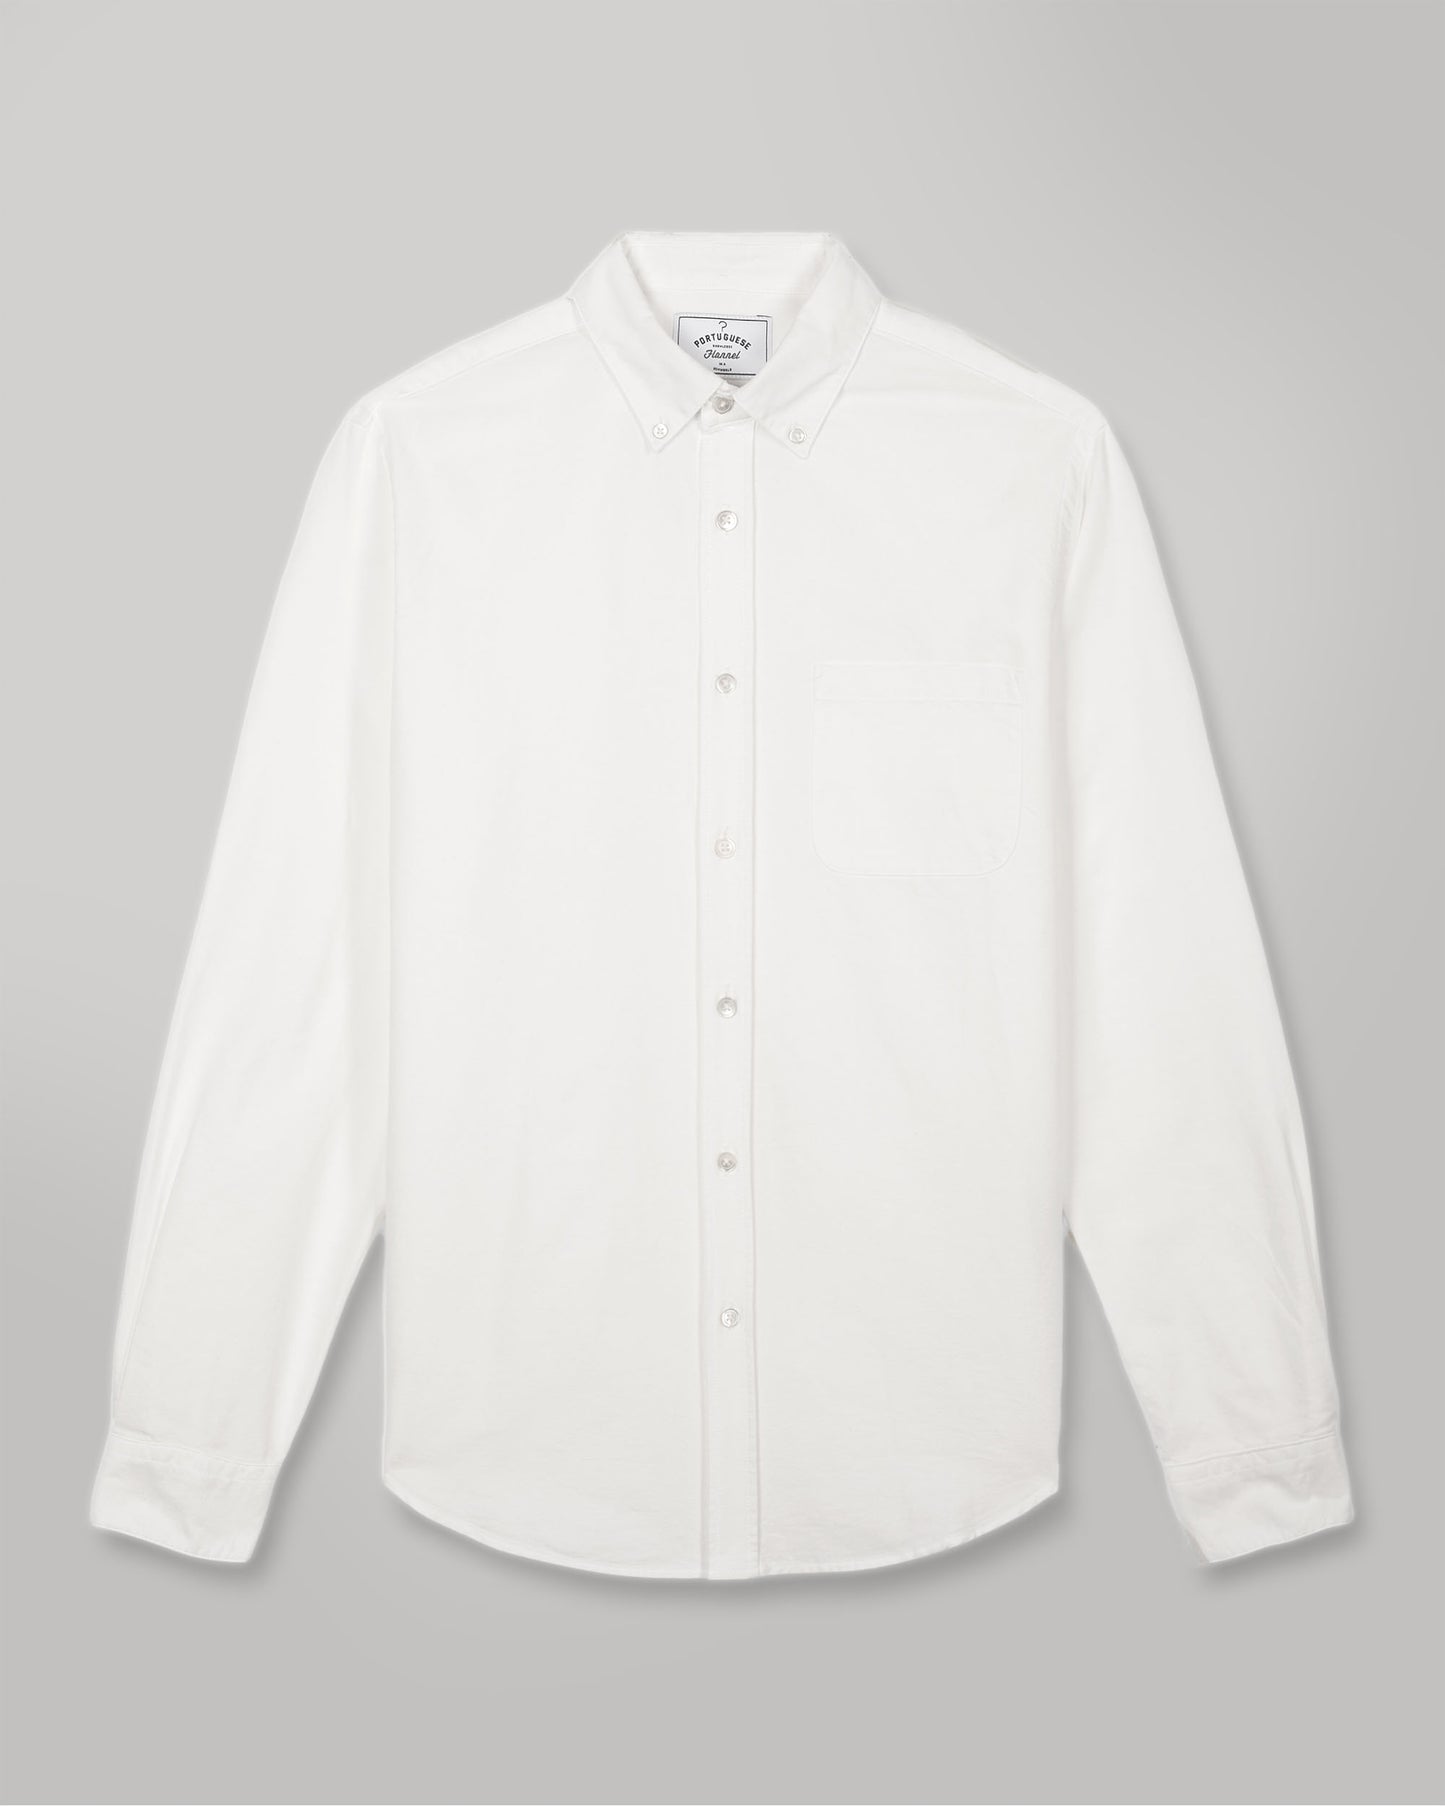 Portuguese Flannel - Belavista White Oxford